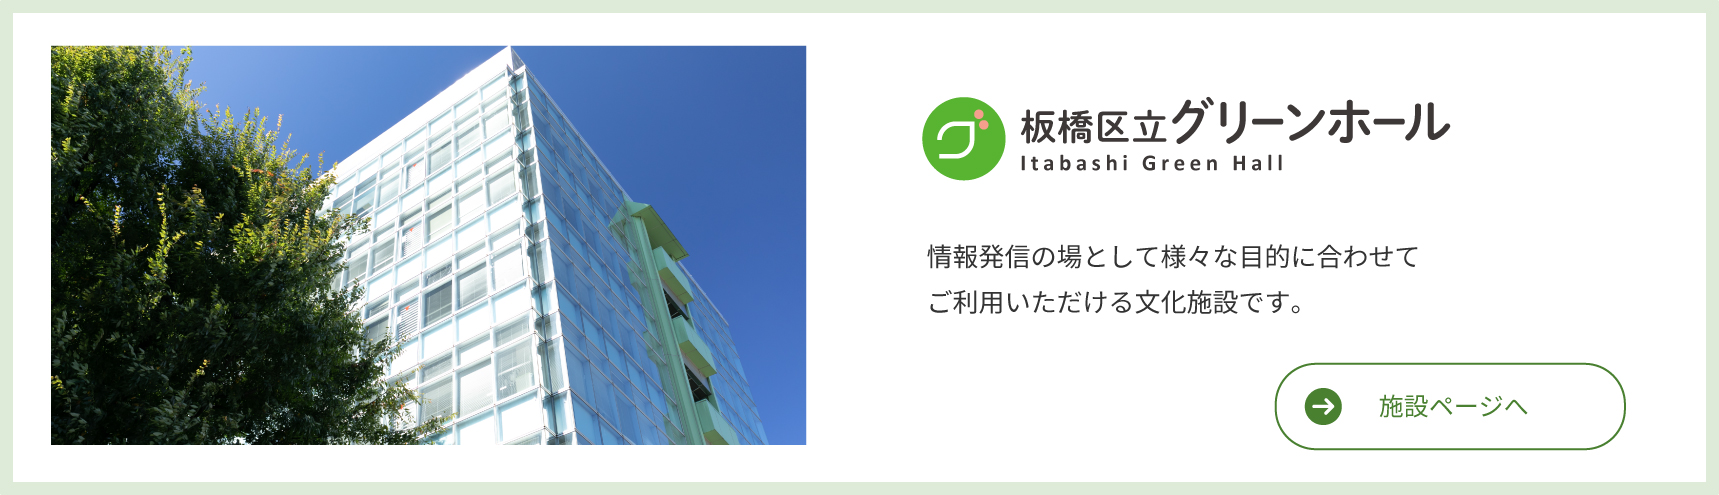 Itabashi Ward Green Hall Kultūros objektas, kuris gali būti naudojamas įvairiems tikslams kaip informacijos sklaidos vieta.